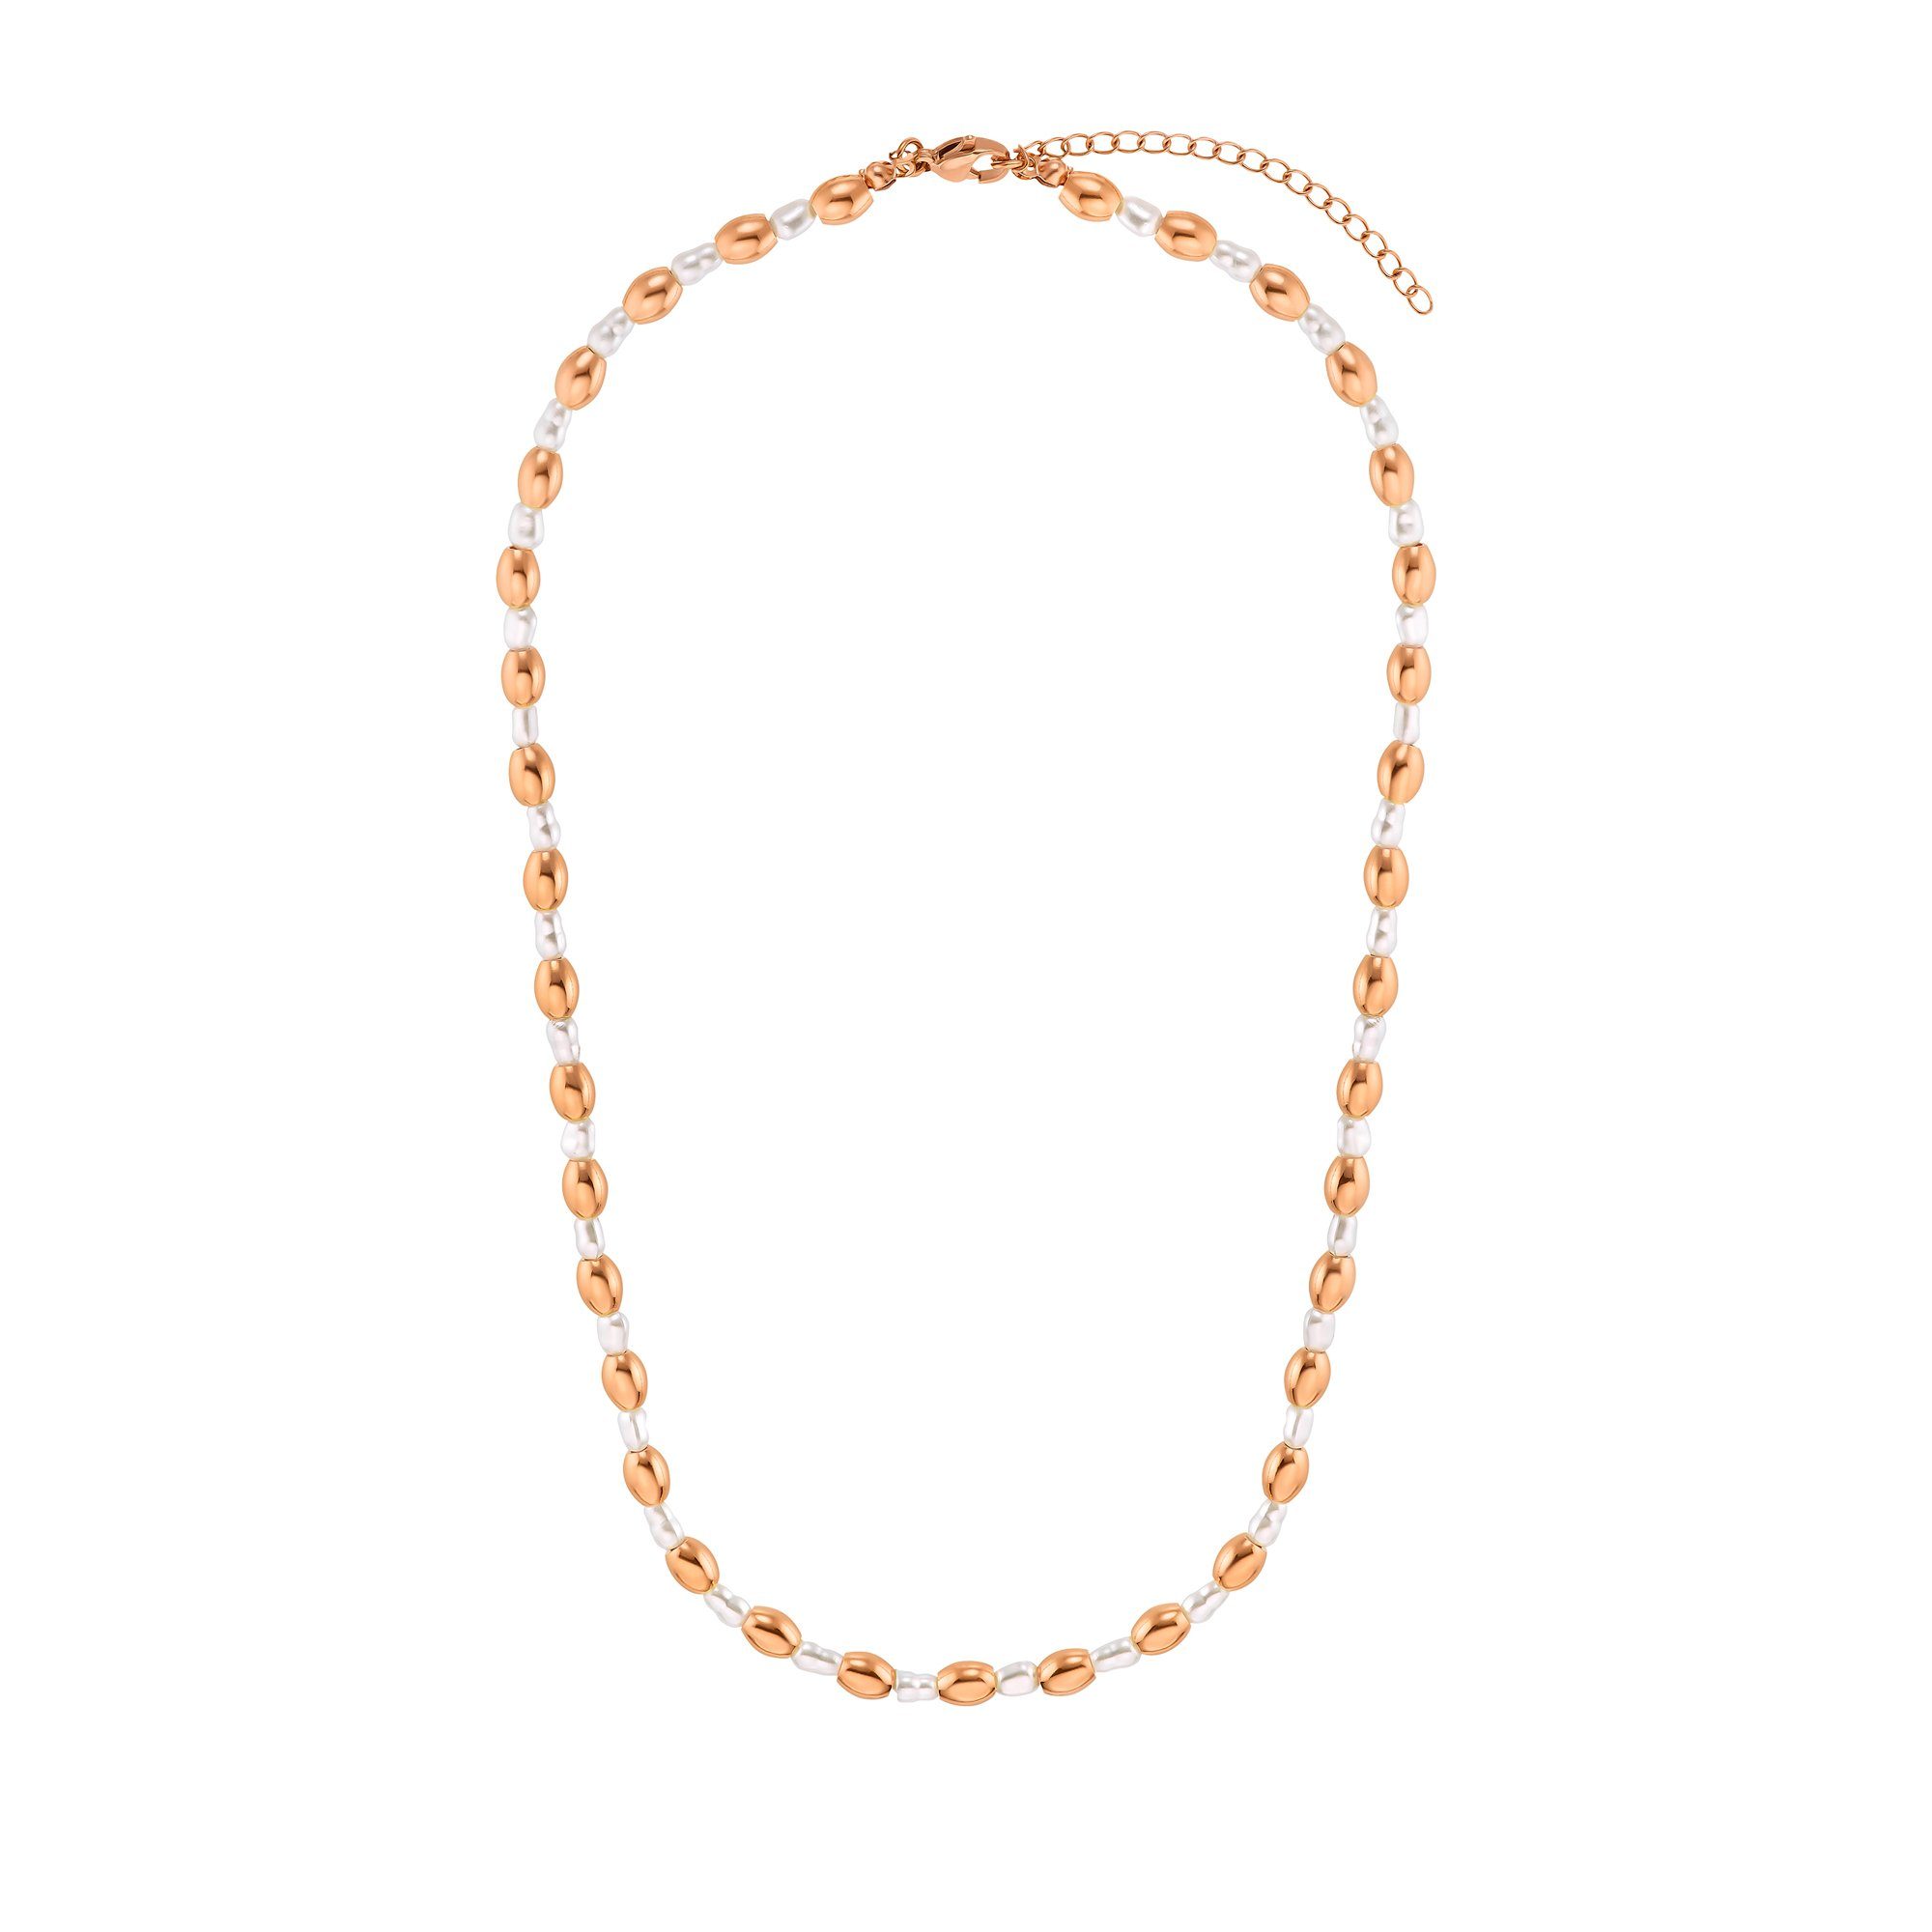 Heideman Collier silberfarben rosegoldfarben Maya mit Perlen poliert (inkl. Geschenkverpackung), ausgefallenen Halskette